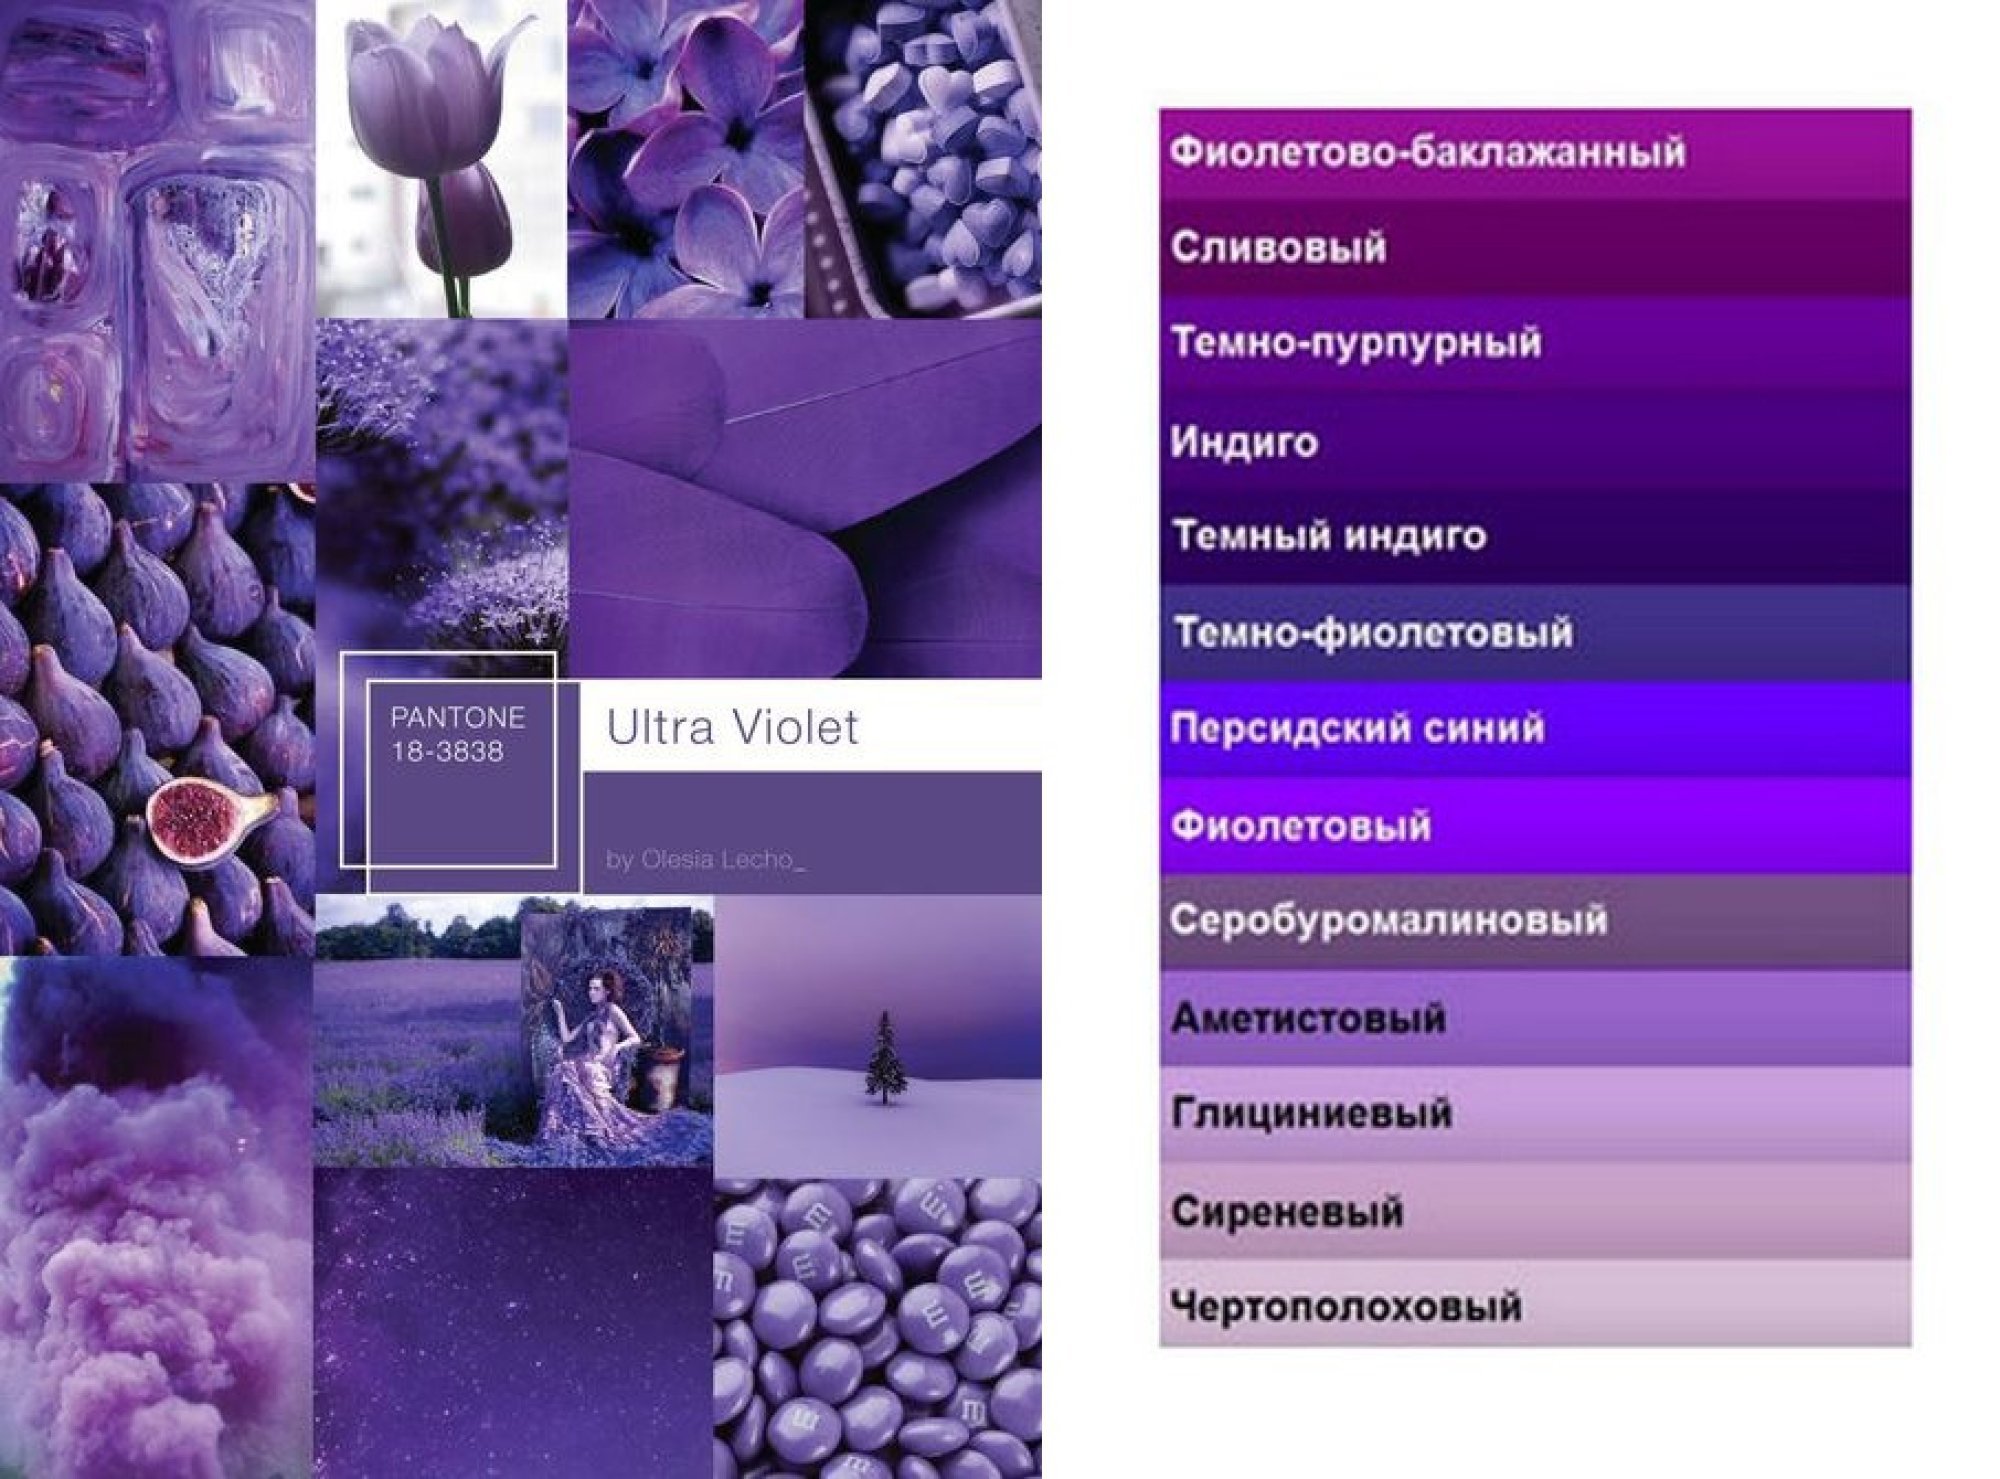 Какой цвет ассоциируется с именем. Оттенки фиолетового. Оттенки фиолетового с названиями. Ототтенуи фиолетового. Оттенки сиреневого с названиями.